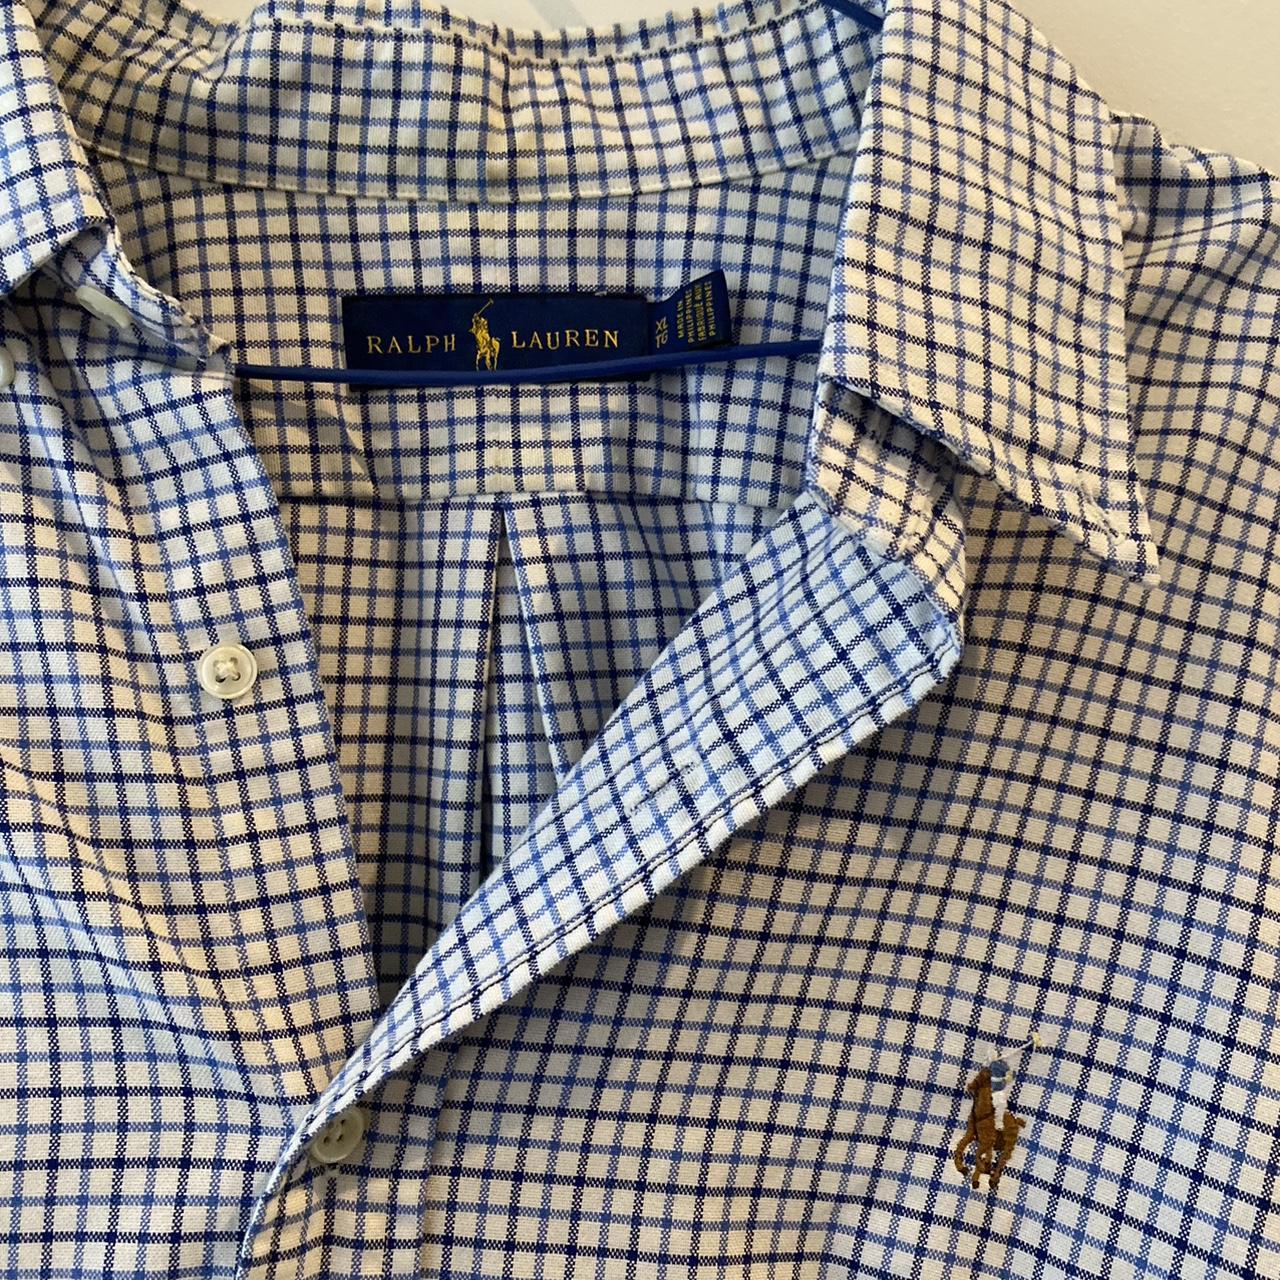 Ralph Lauren polo button up shirt - Depop